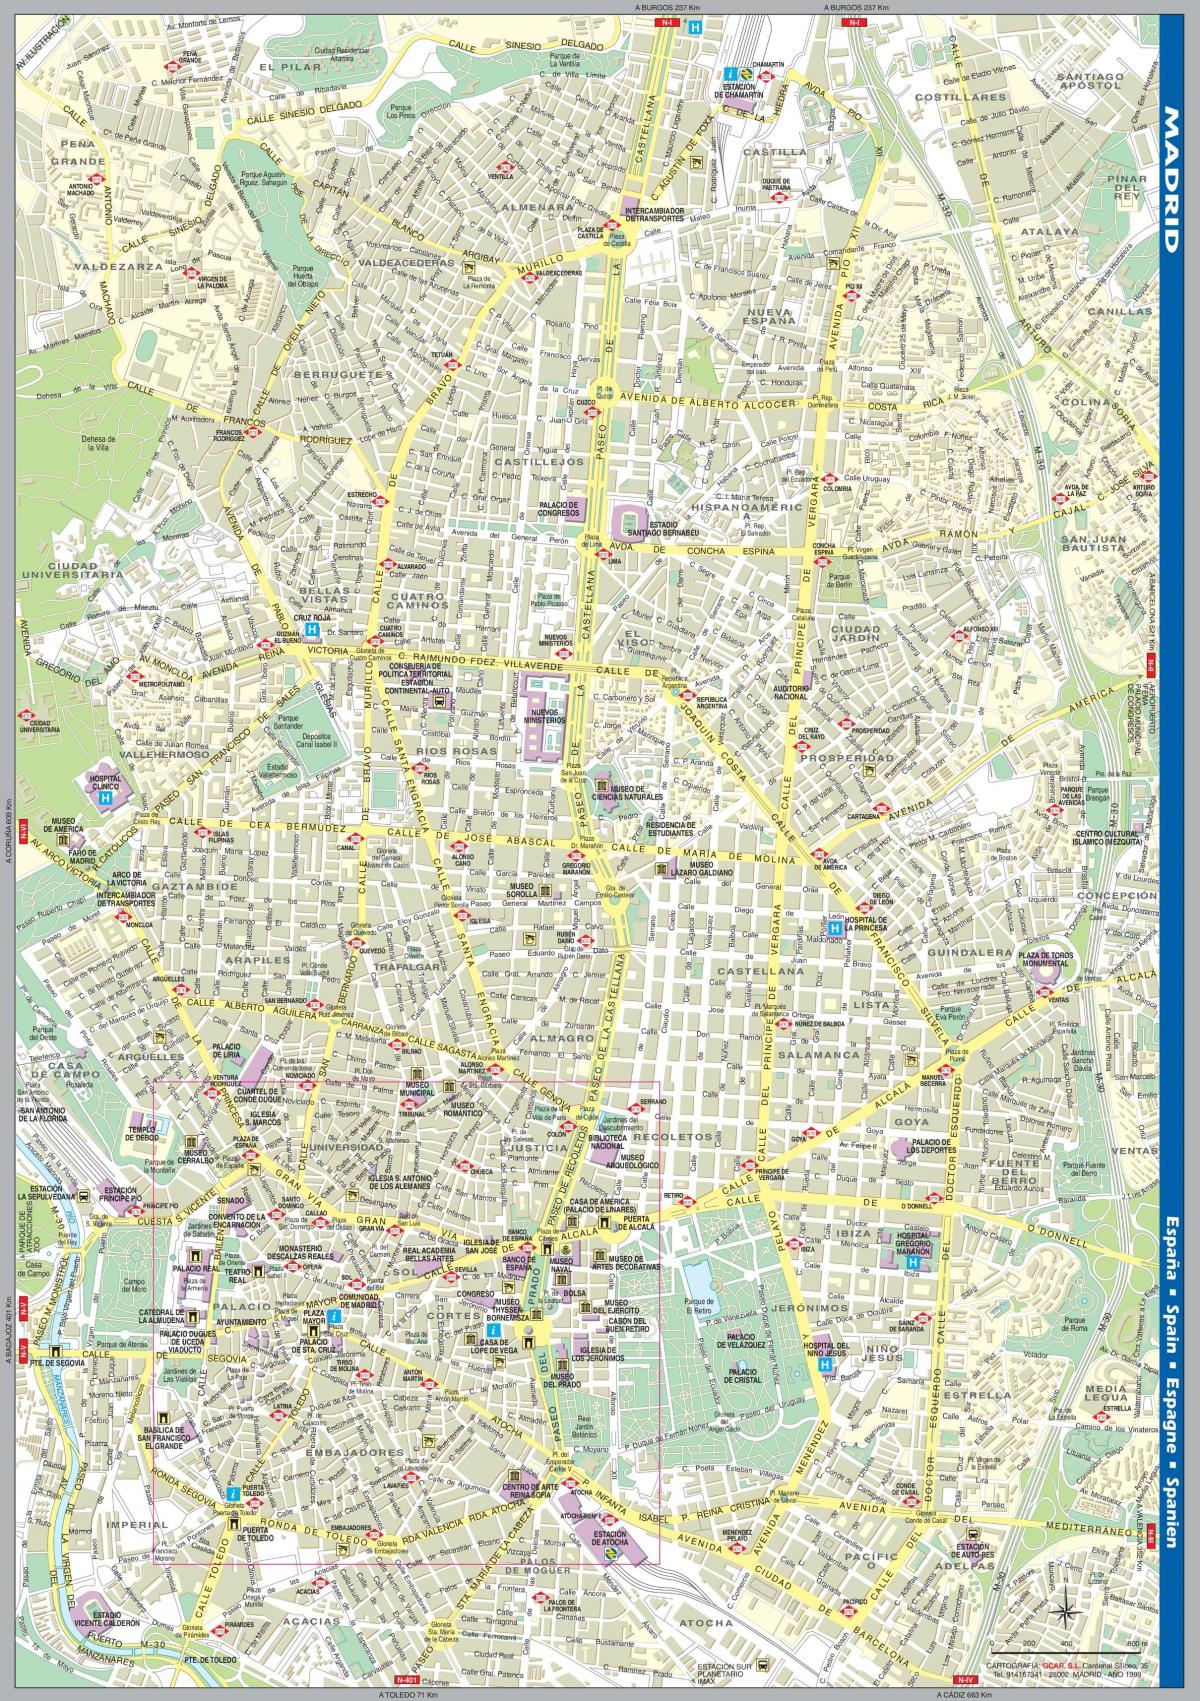 ถนนแผนที่ของมาดริดศูนย์กลางเมือง